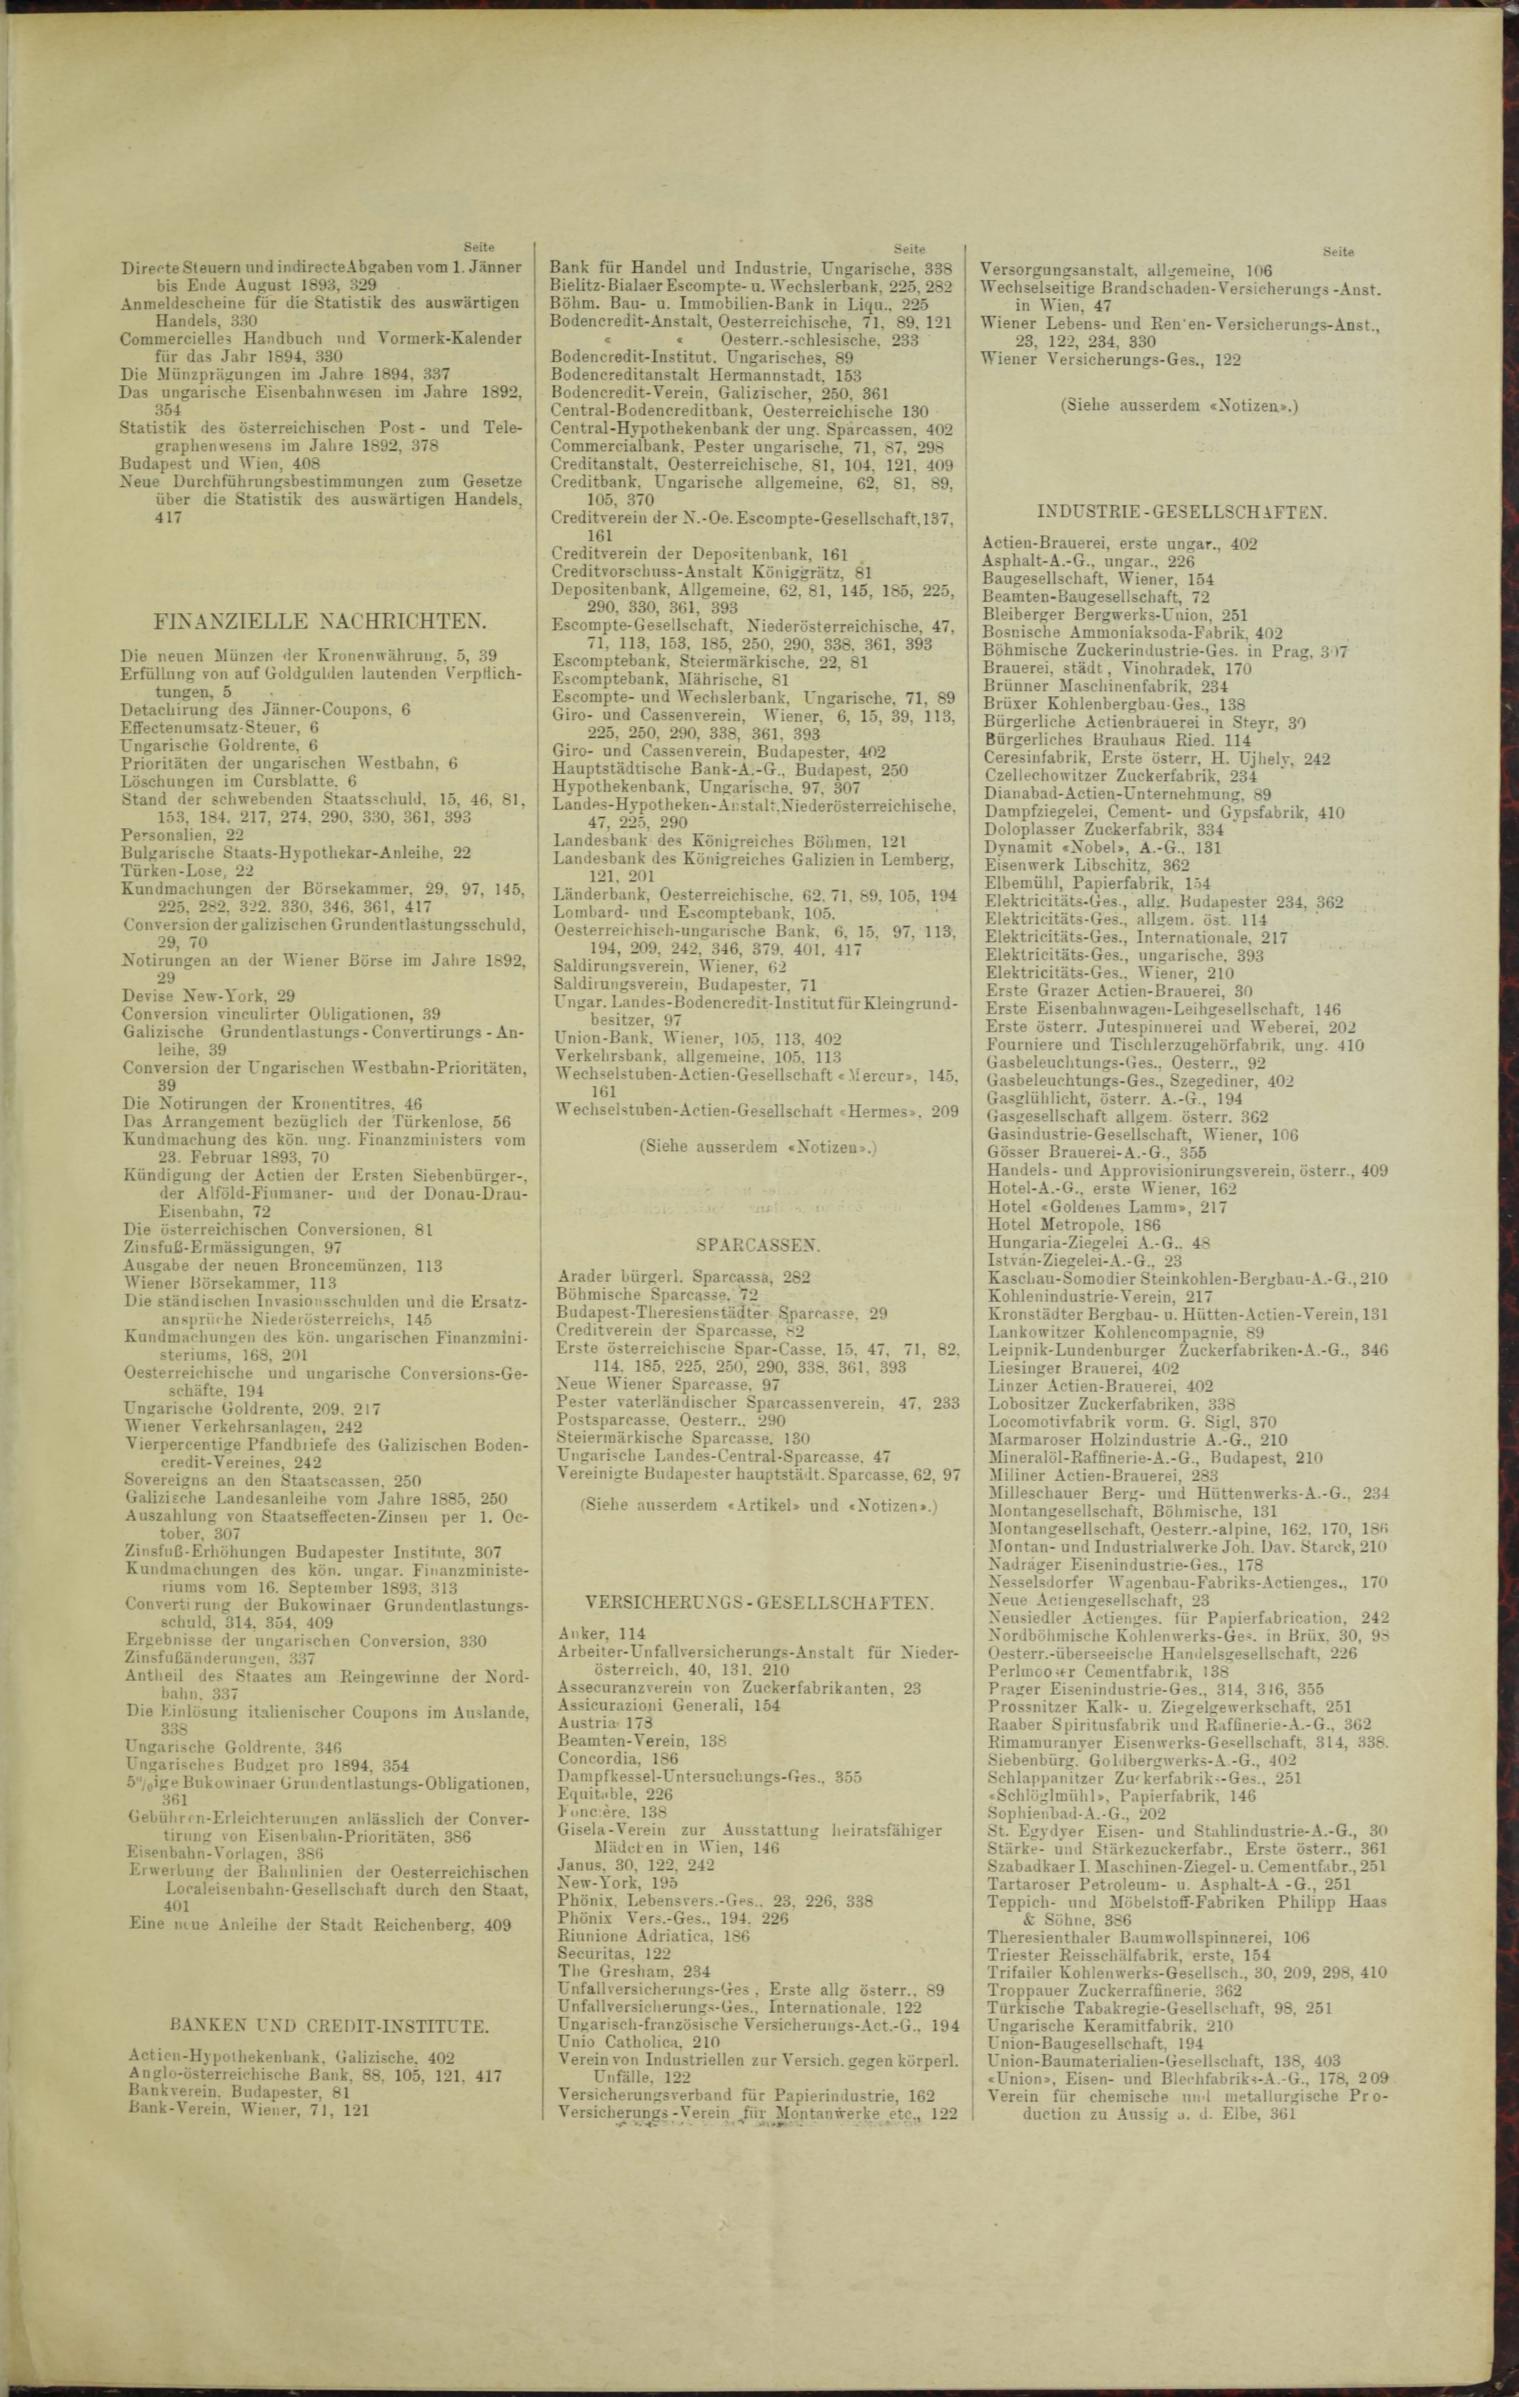 Der Tresor 06.04.1893 - Seite 11